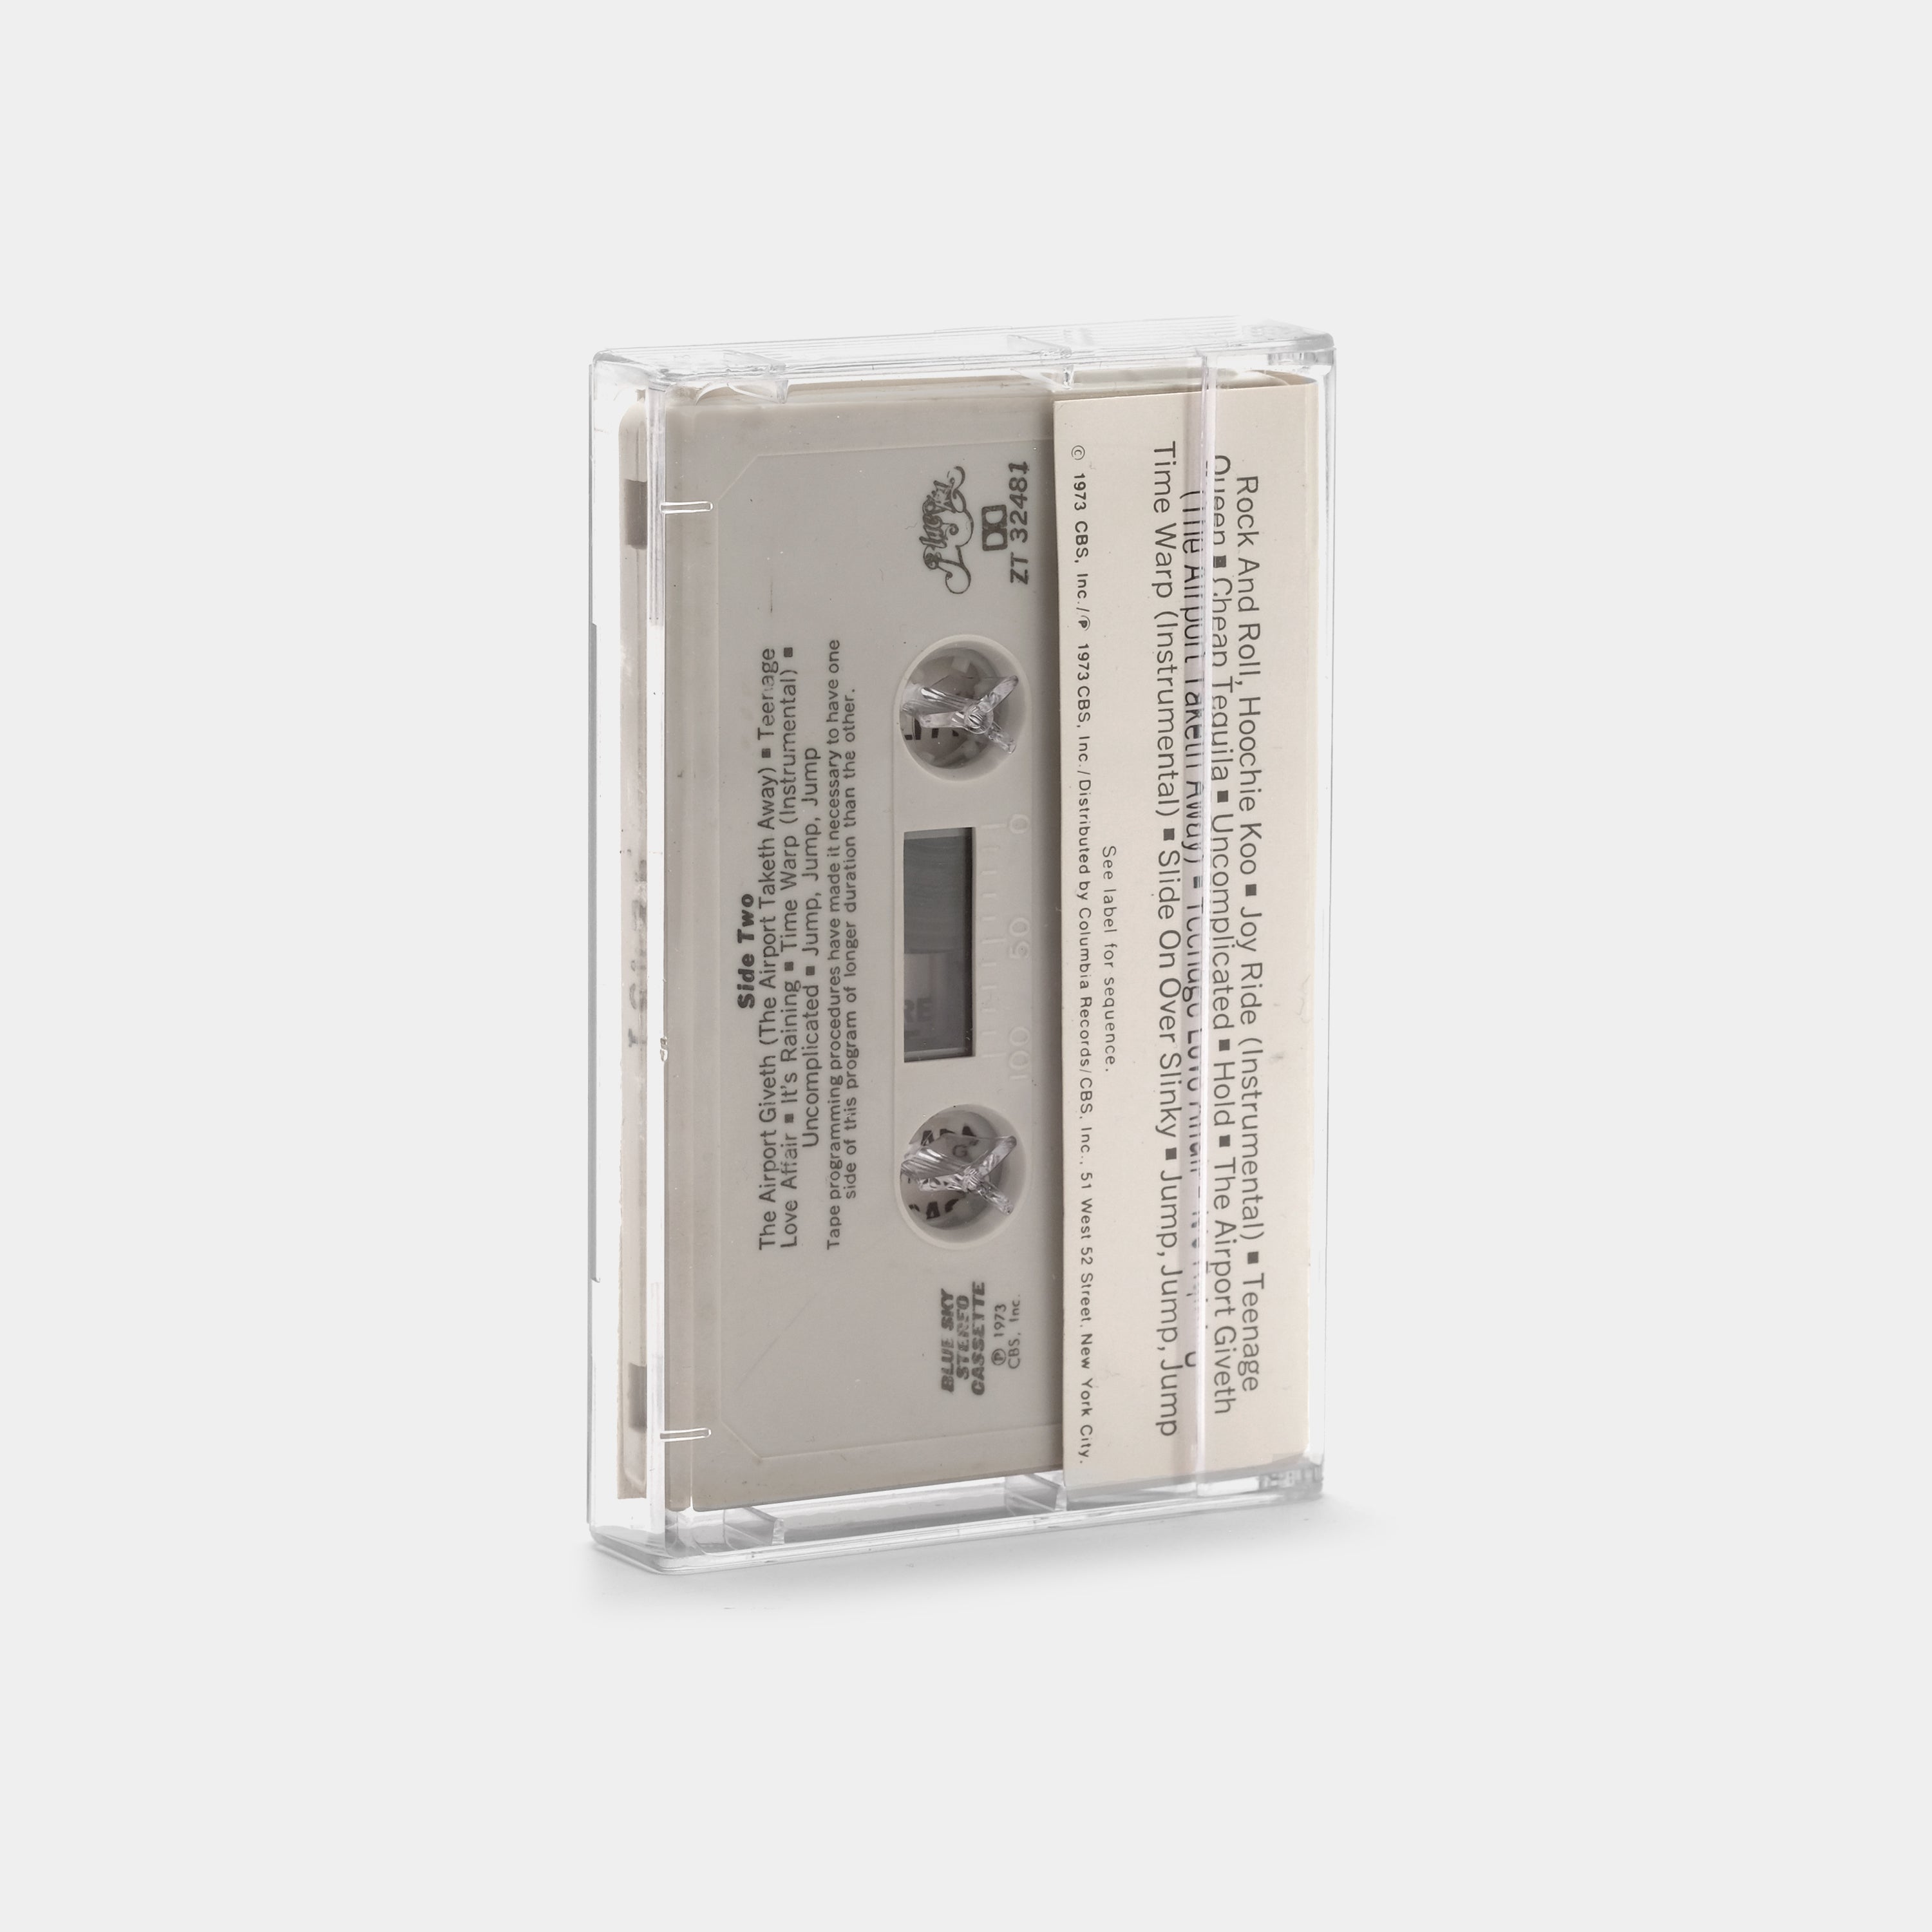 Rick Derringer - All American Boy Cassette Tape